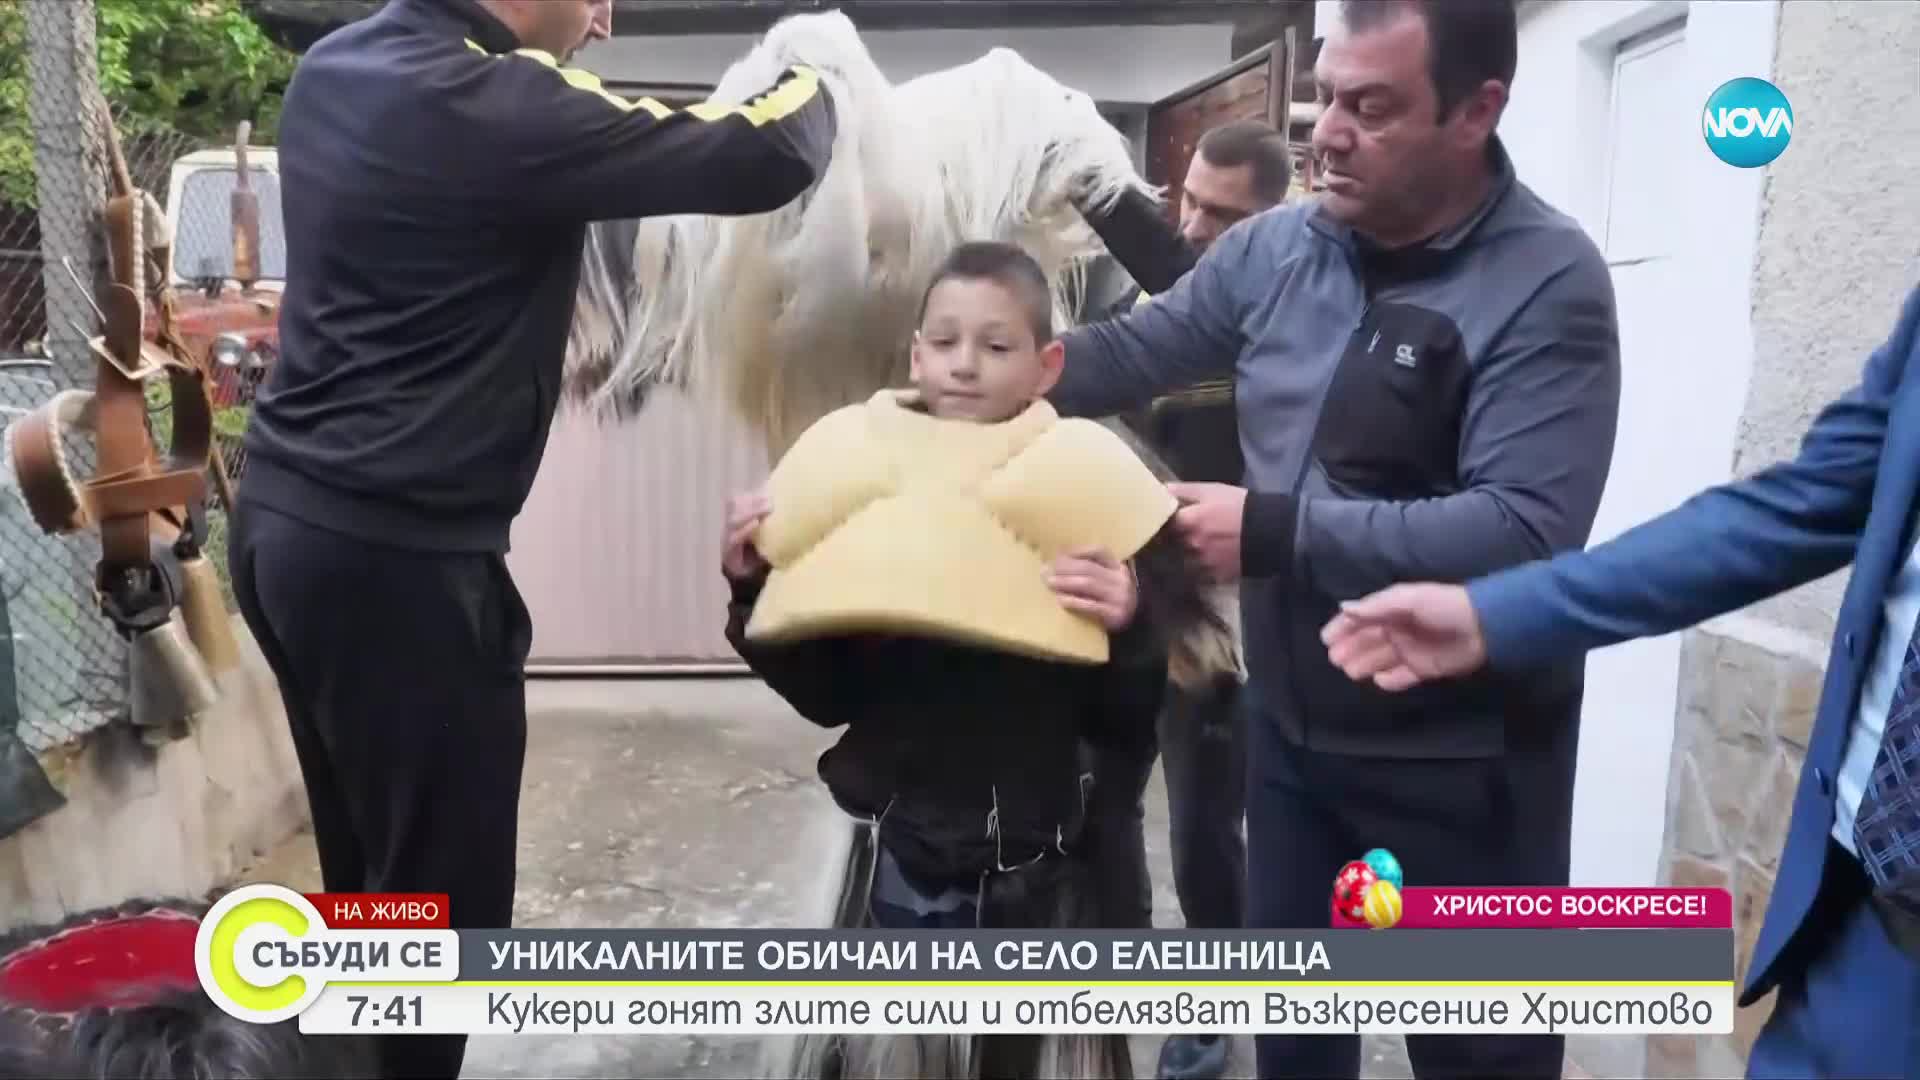 Кукери гонят злите сили в село Елешница